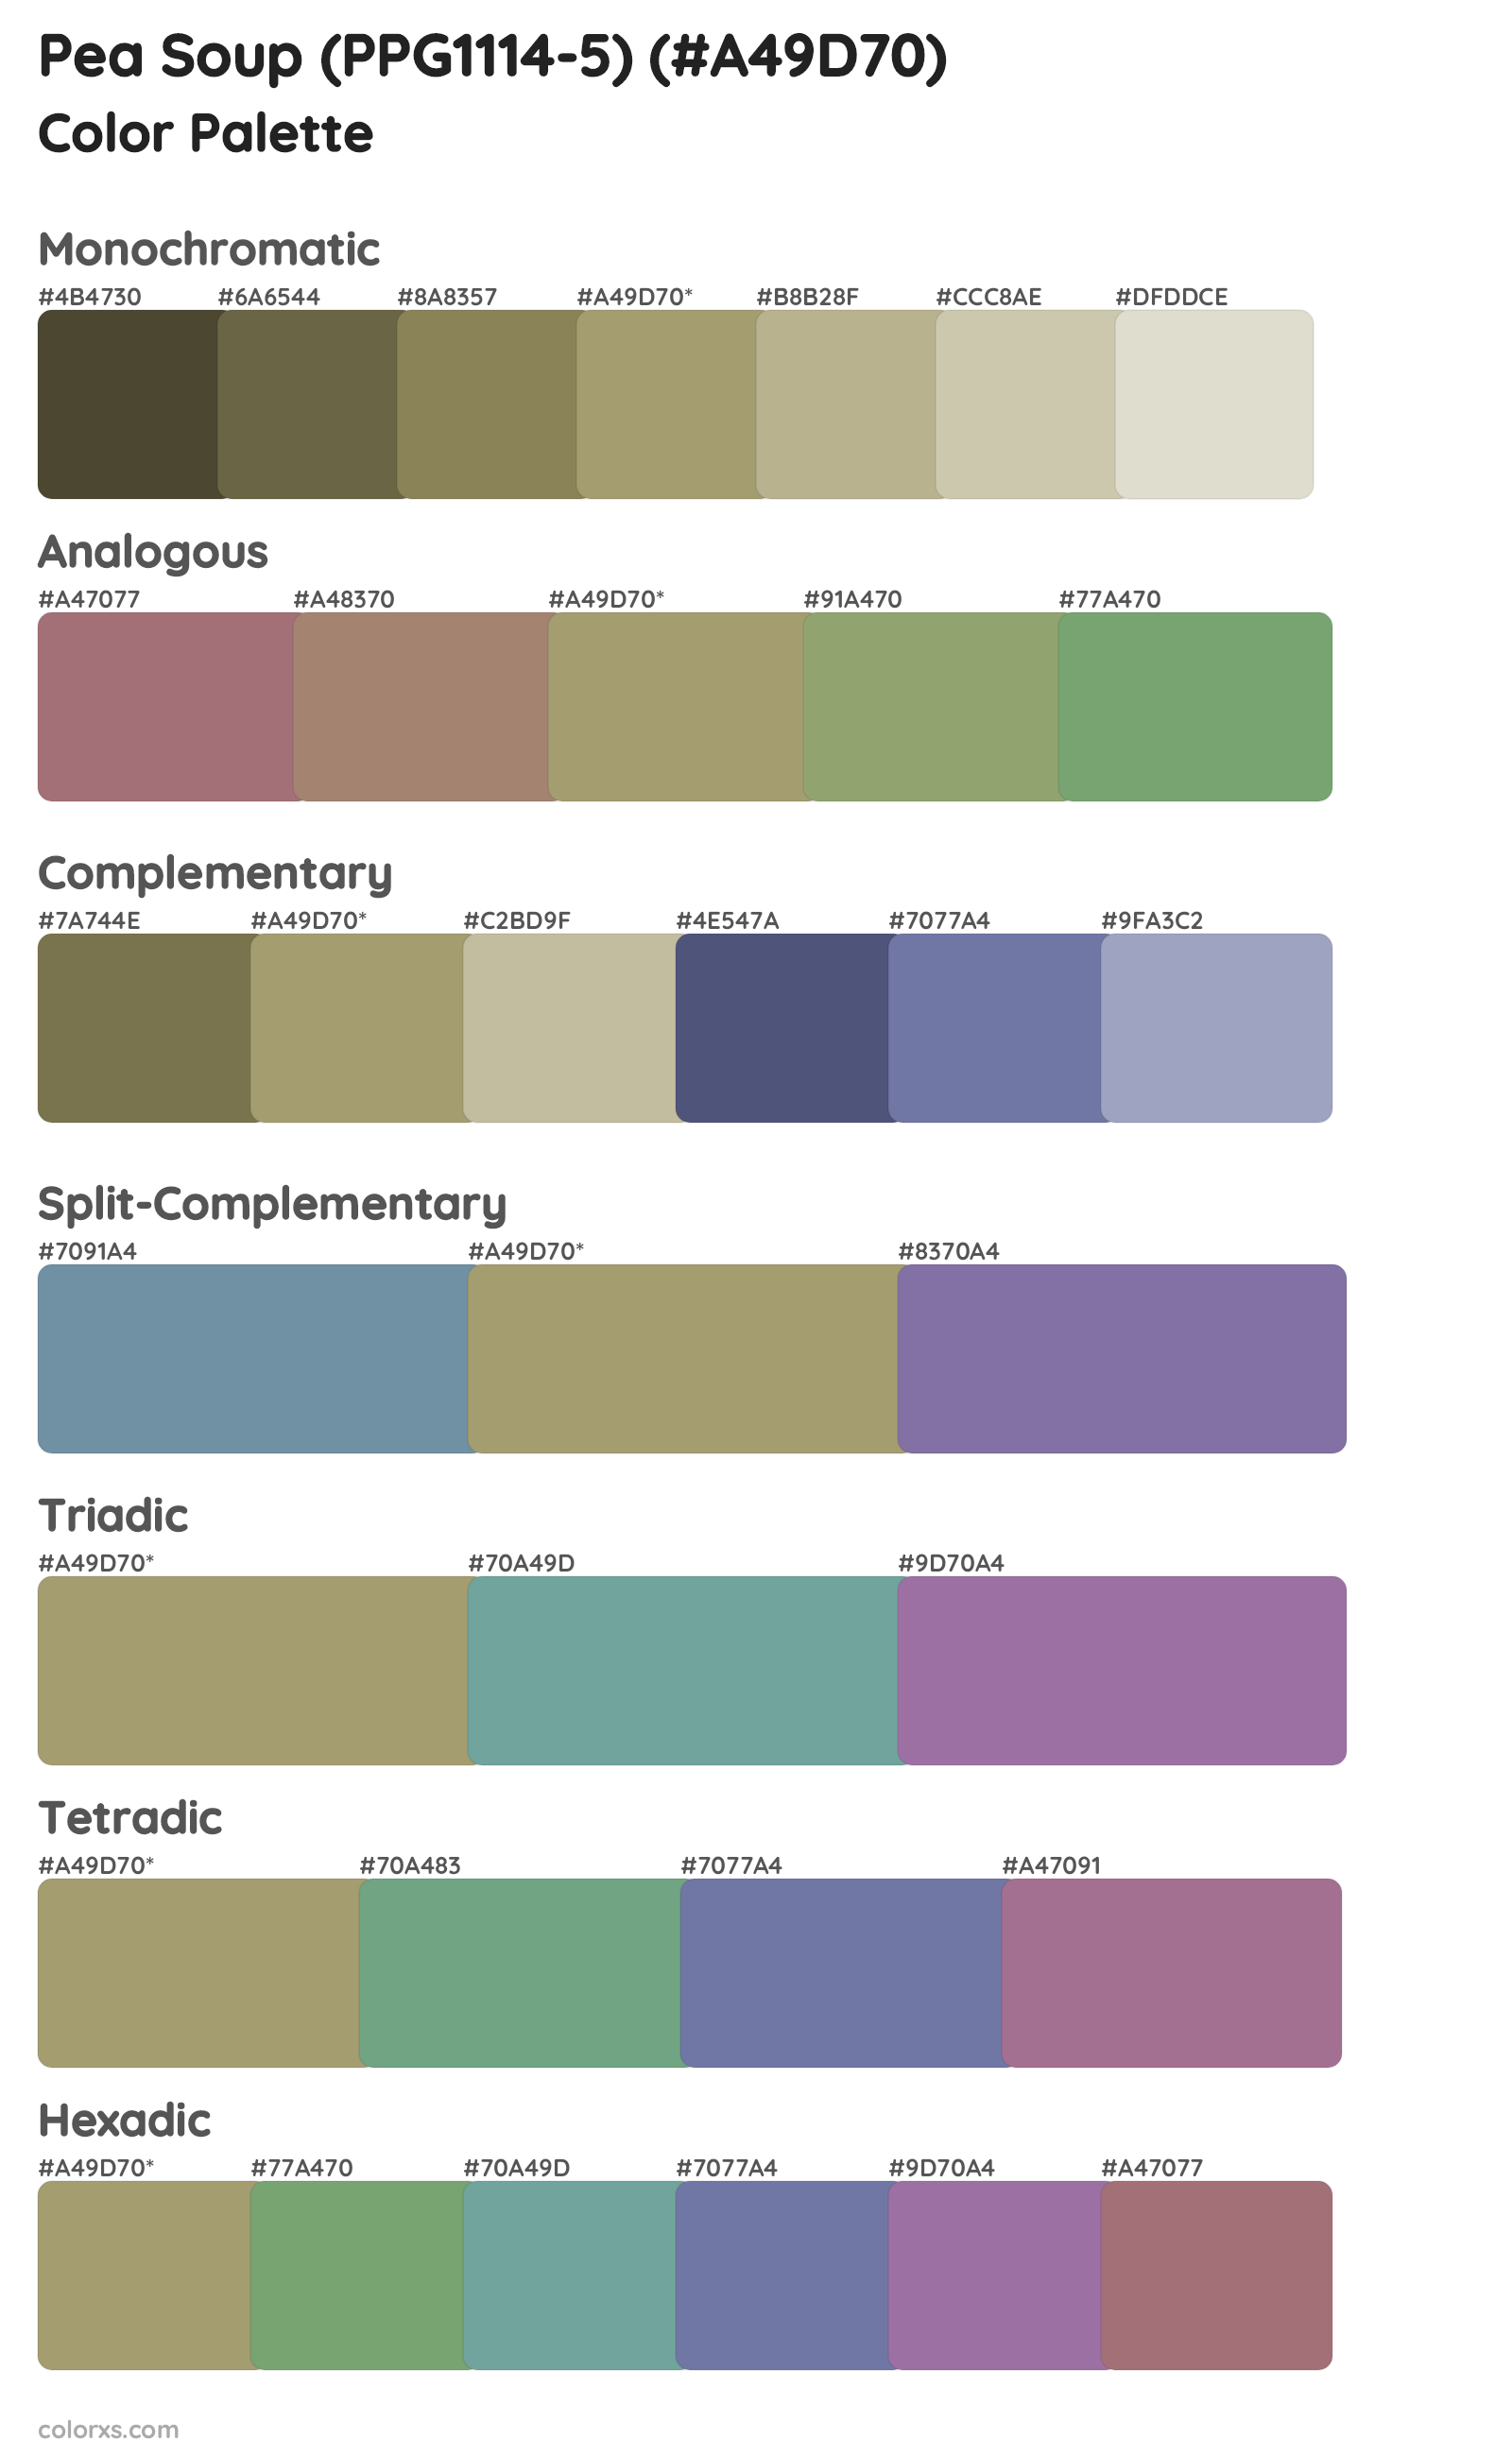 Pea Soup (PPG1114-5) Color Scheme Palettes